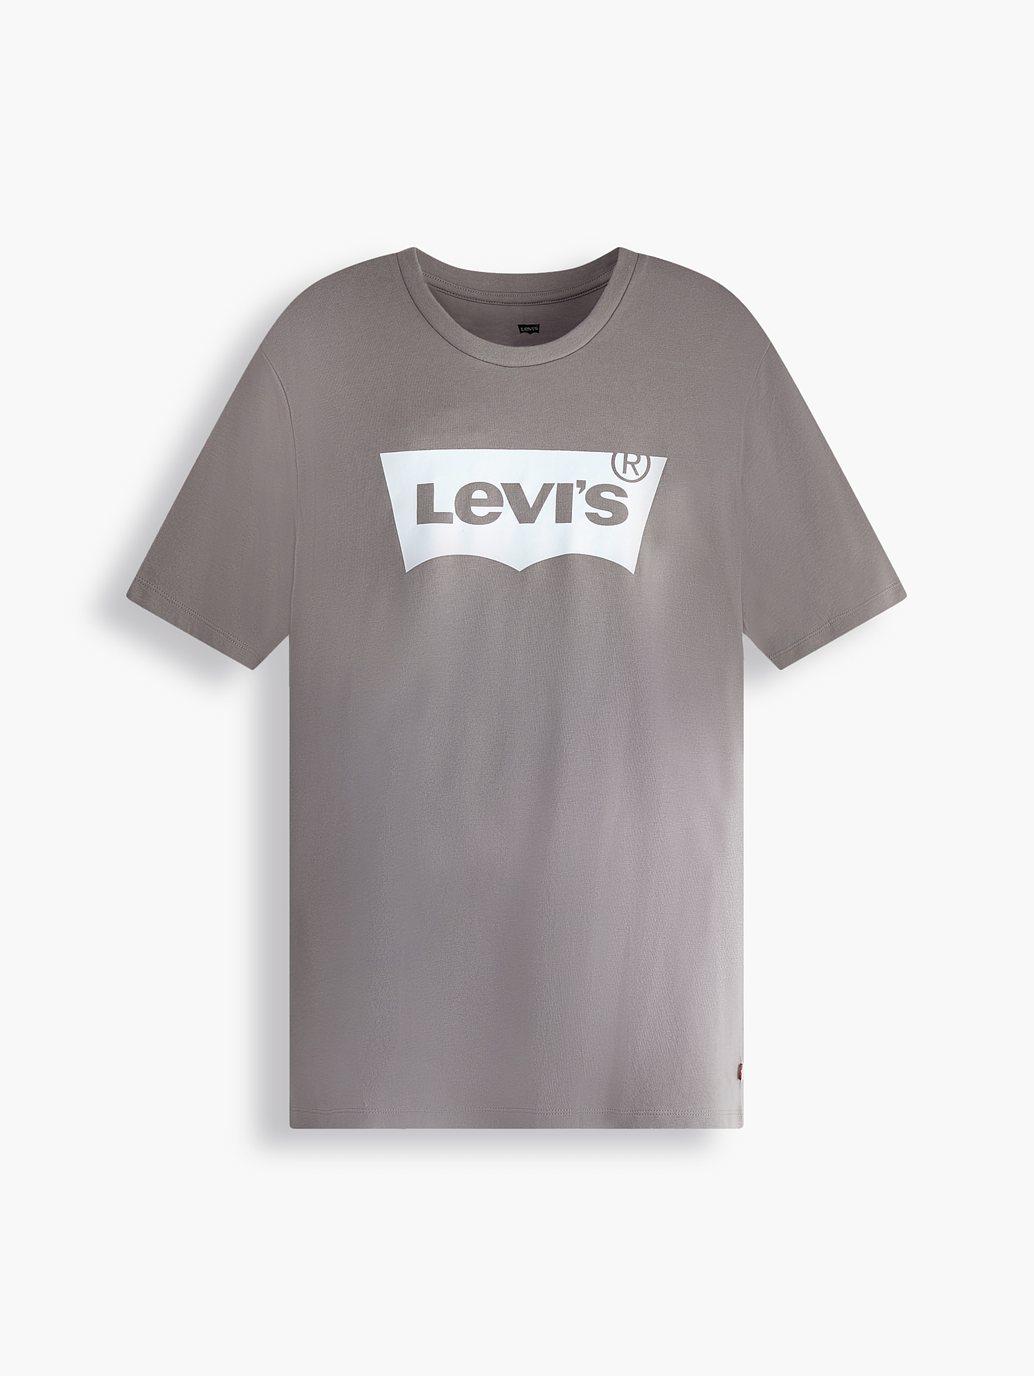 Buy Levi's® Men's Classic Graphic T-Shirt | Levi's® Official Online Store SG